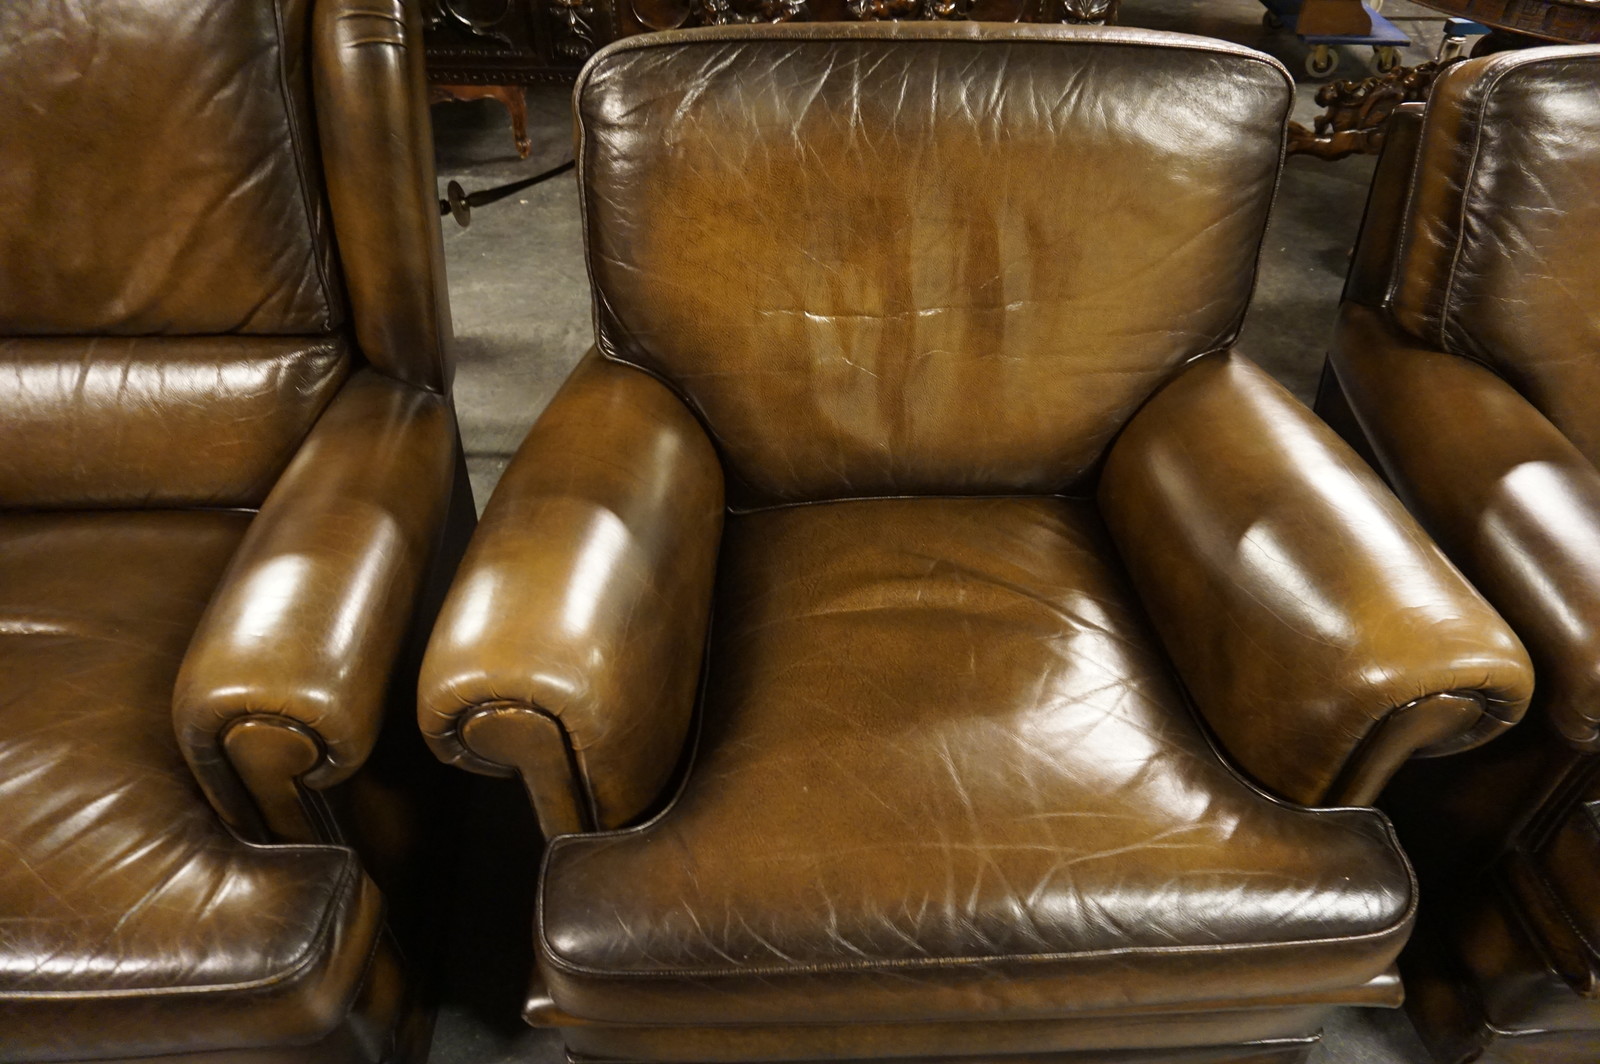 Leather 3 piece sofa set